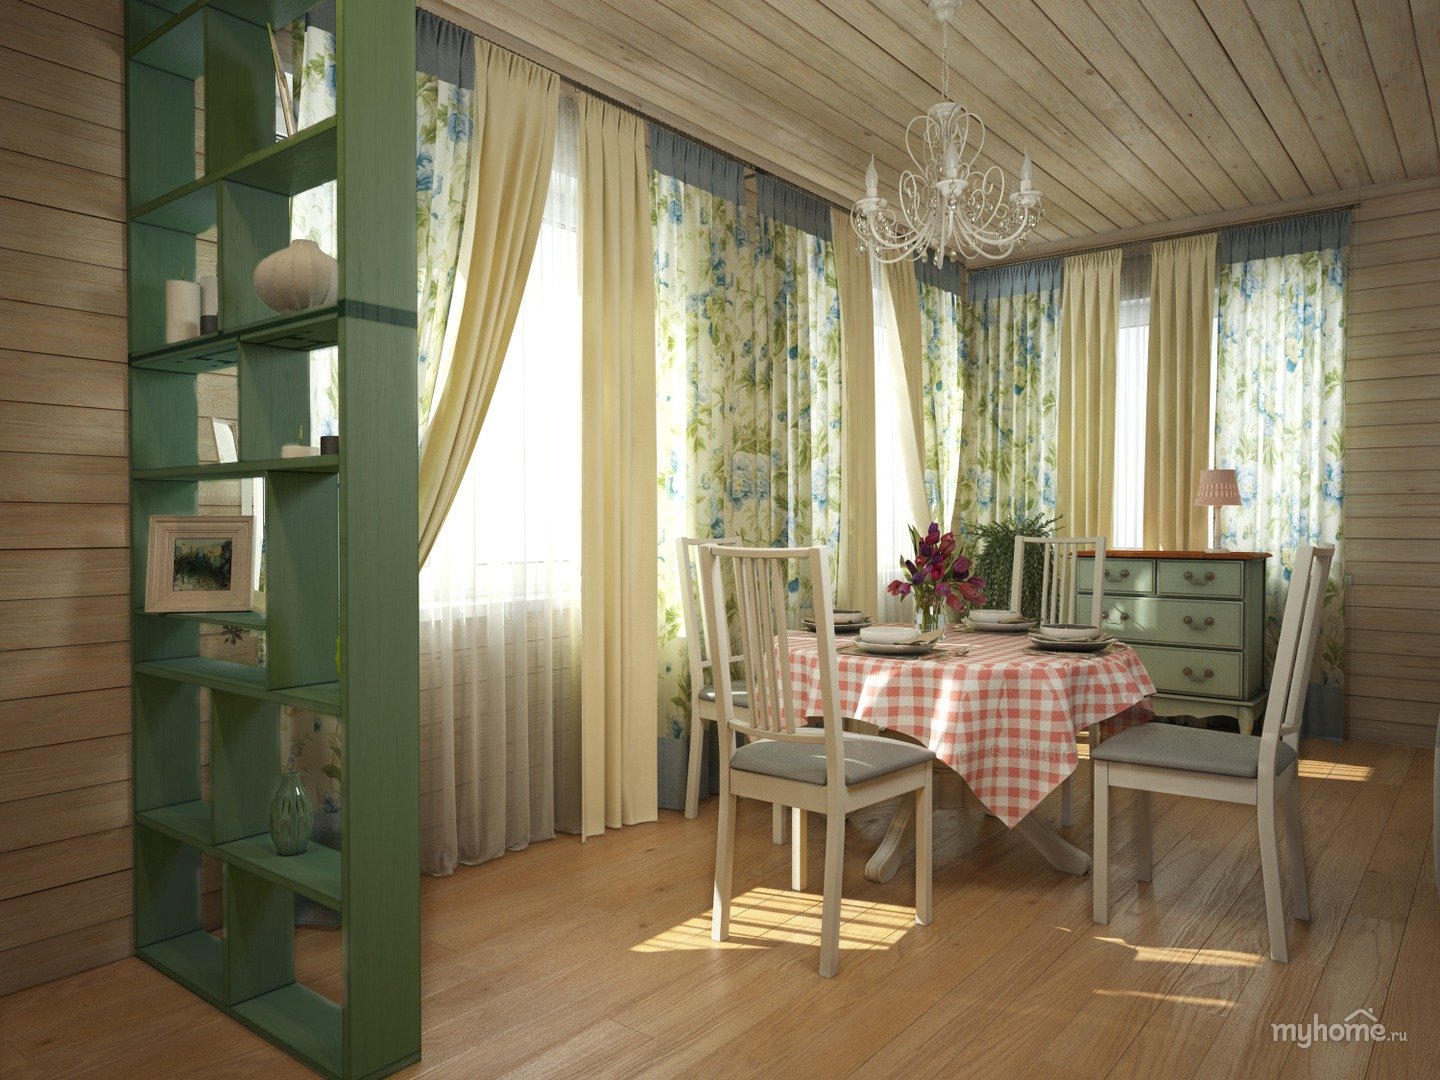 Как разделить комнаты дома с помощью перегородок, ширм и штор?